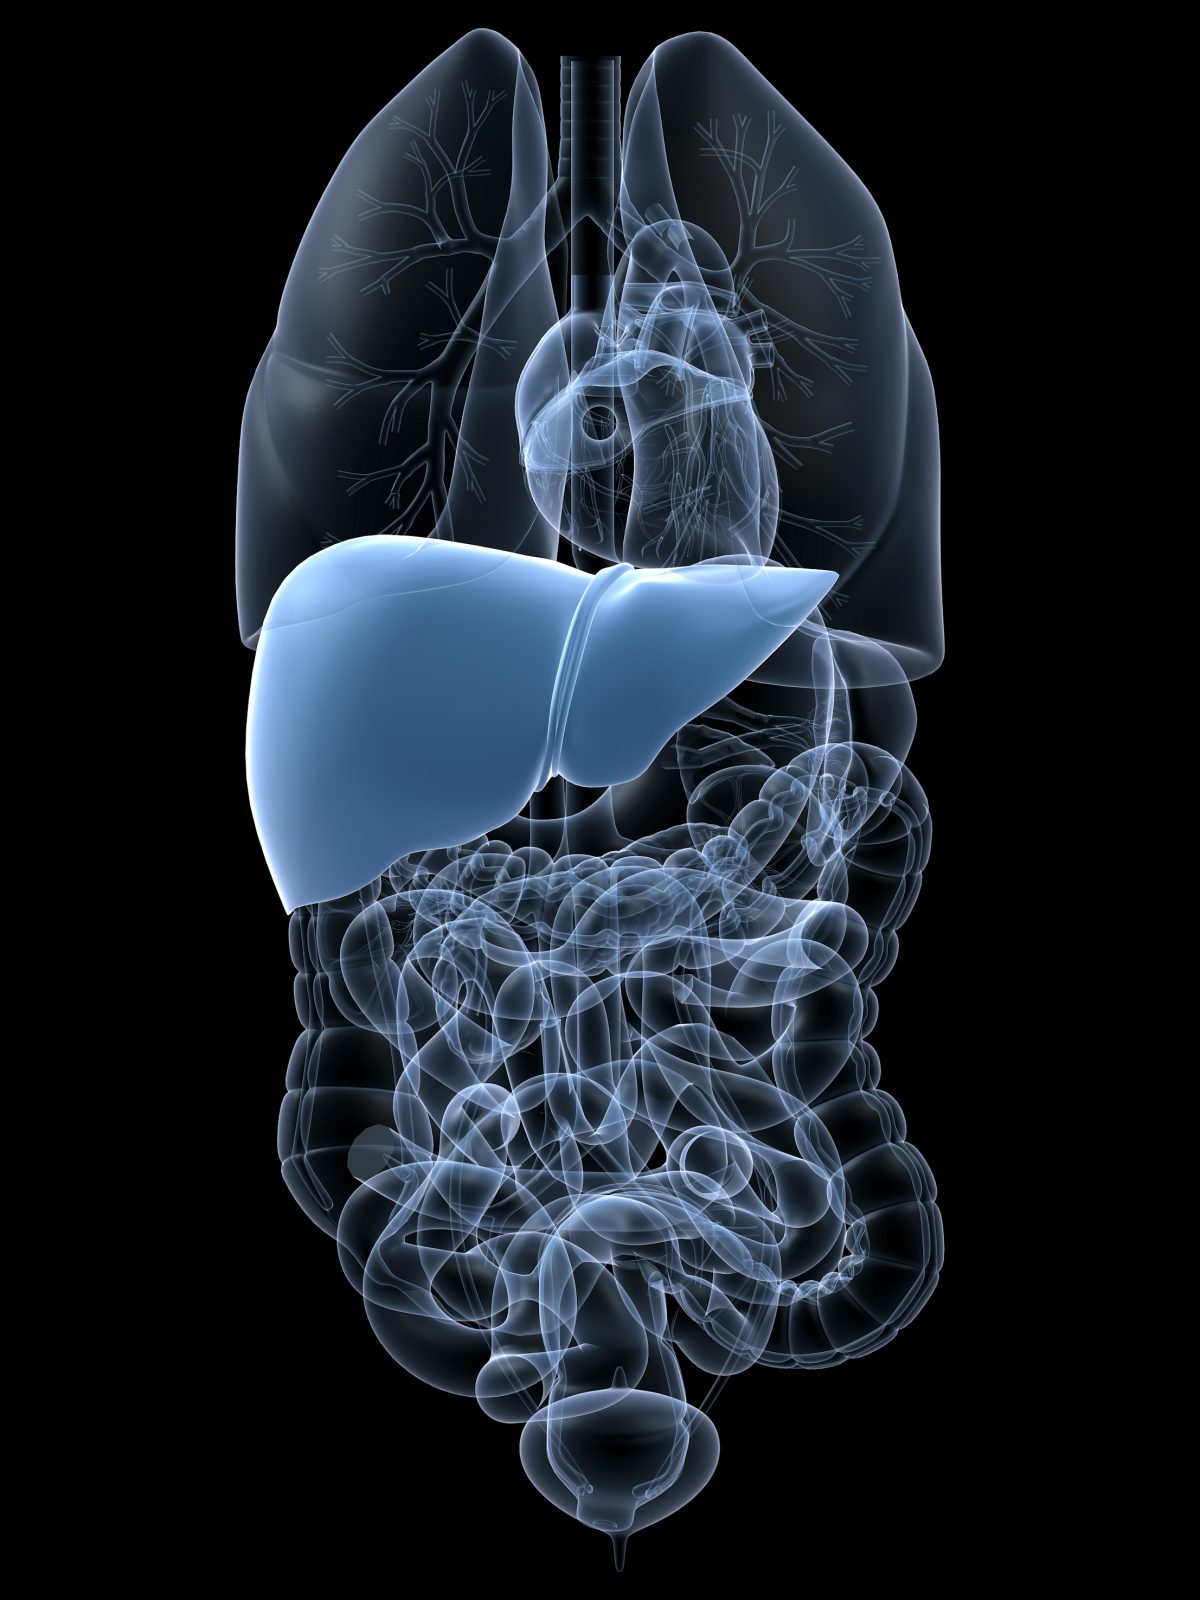 肝臓の位置。本人から見て腹部の右上、横隔膜の下にある。